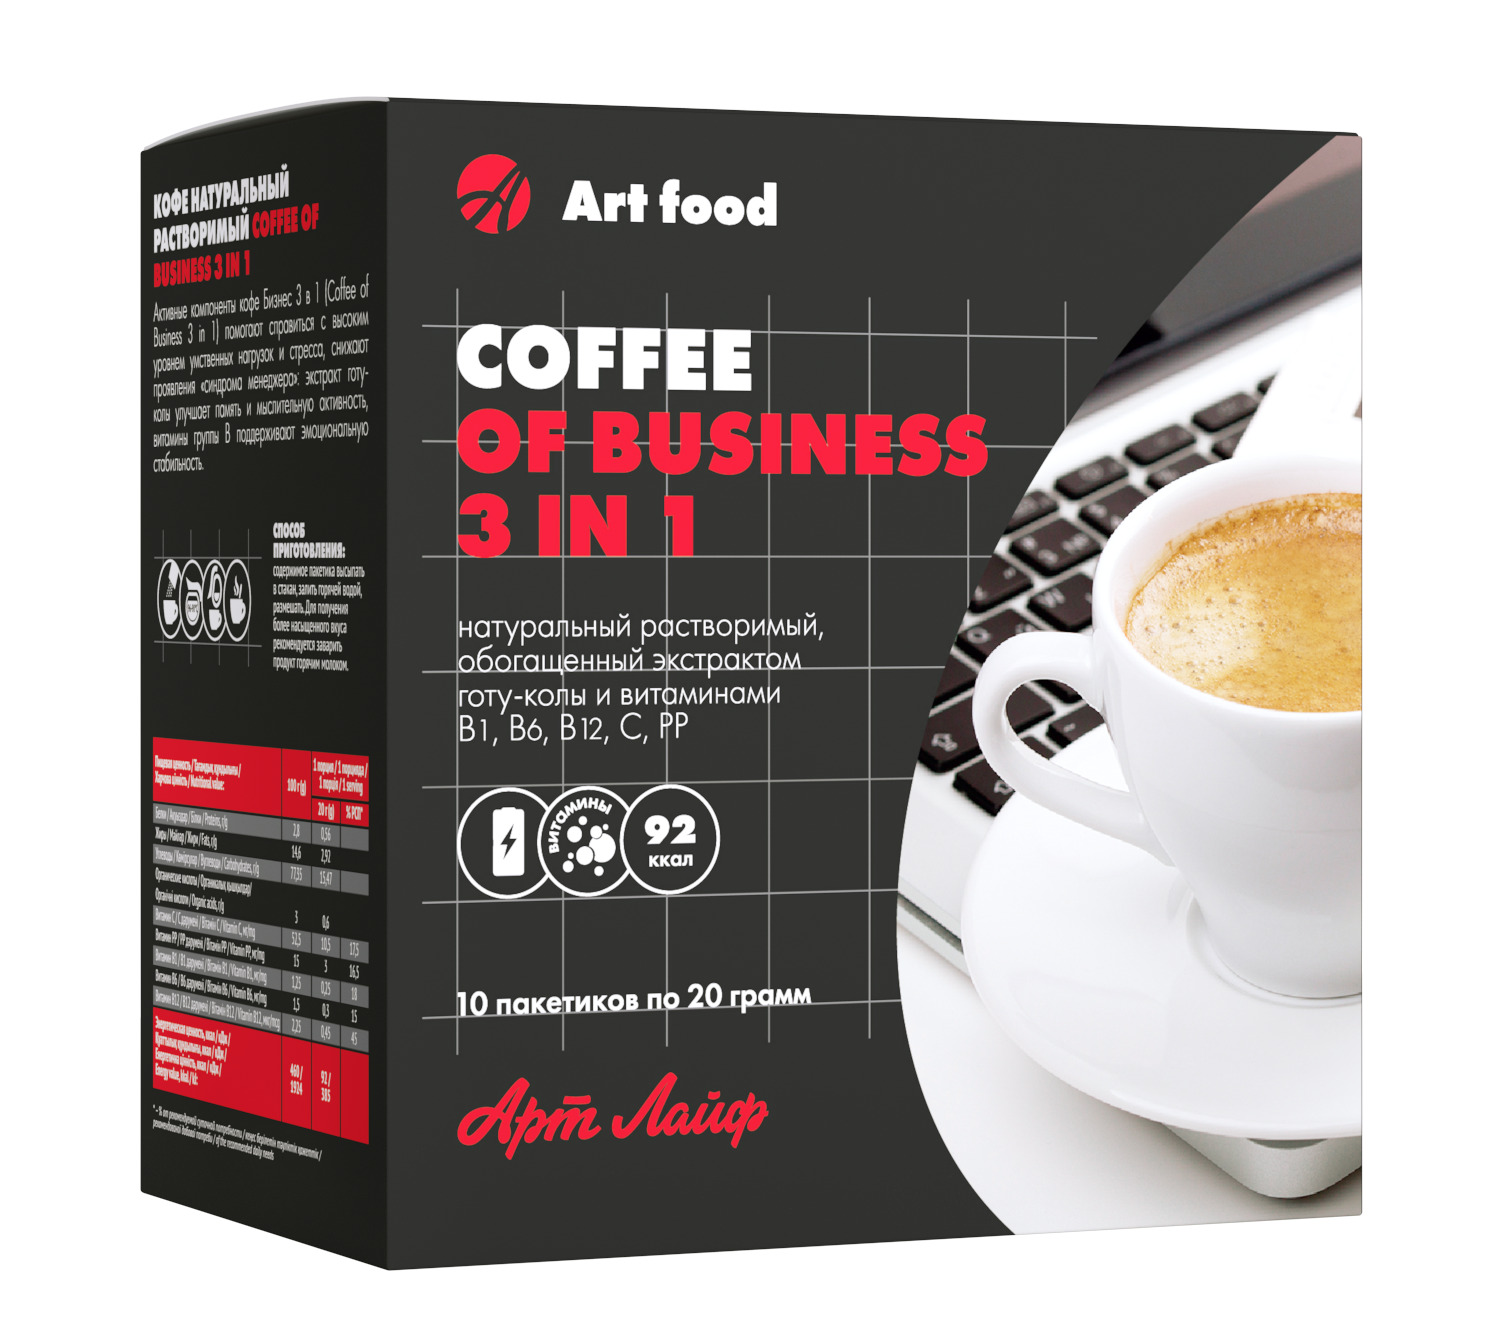 Витамины с кофе можно. Кофе бизнес арт лайф. Кофе Business 3 in 1. Кофе 3 в 1 в пакетиках. Кафе бизнес арт лайф.